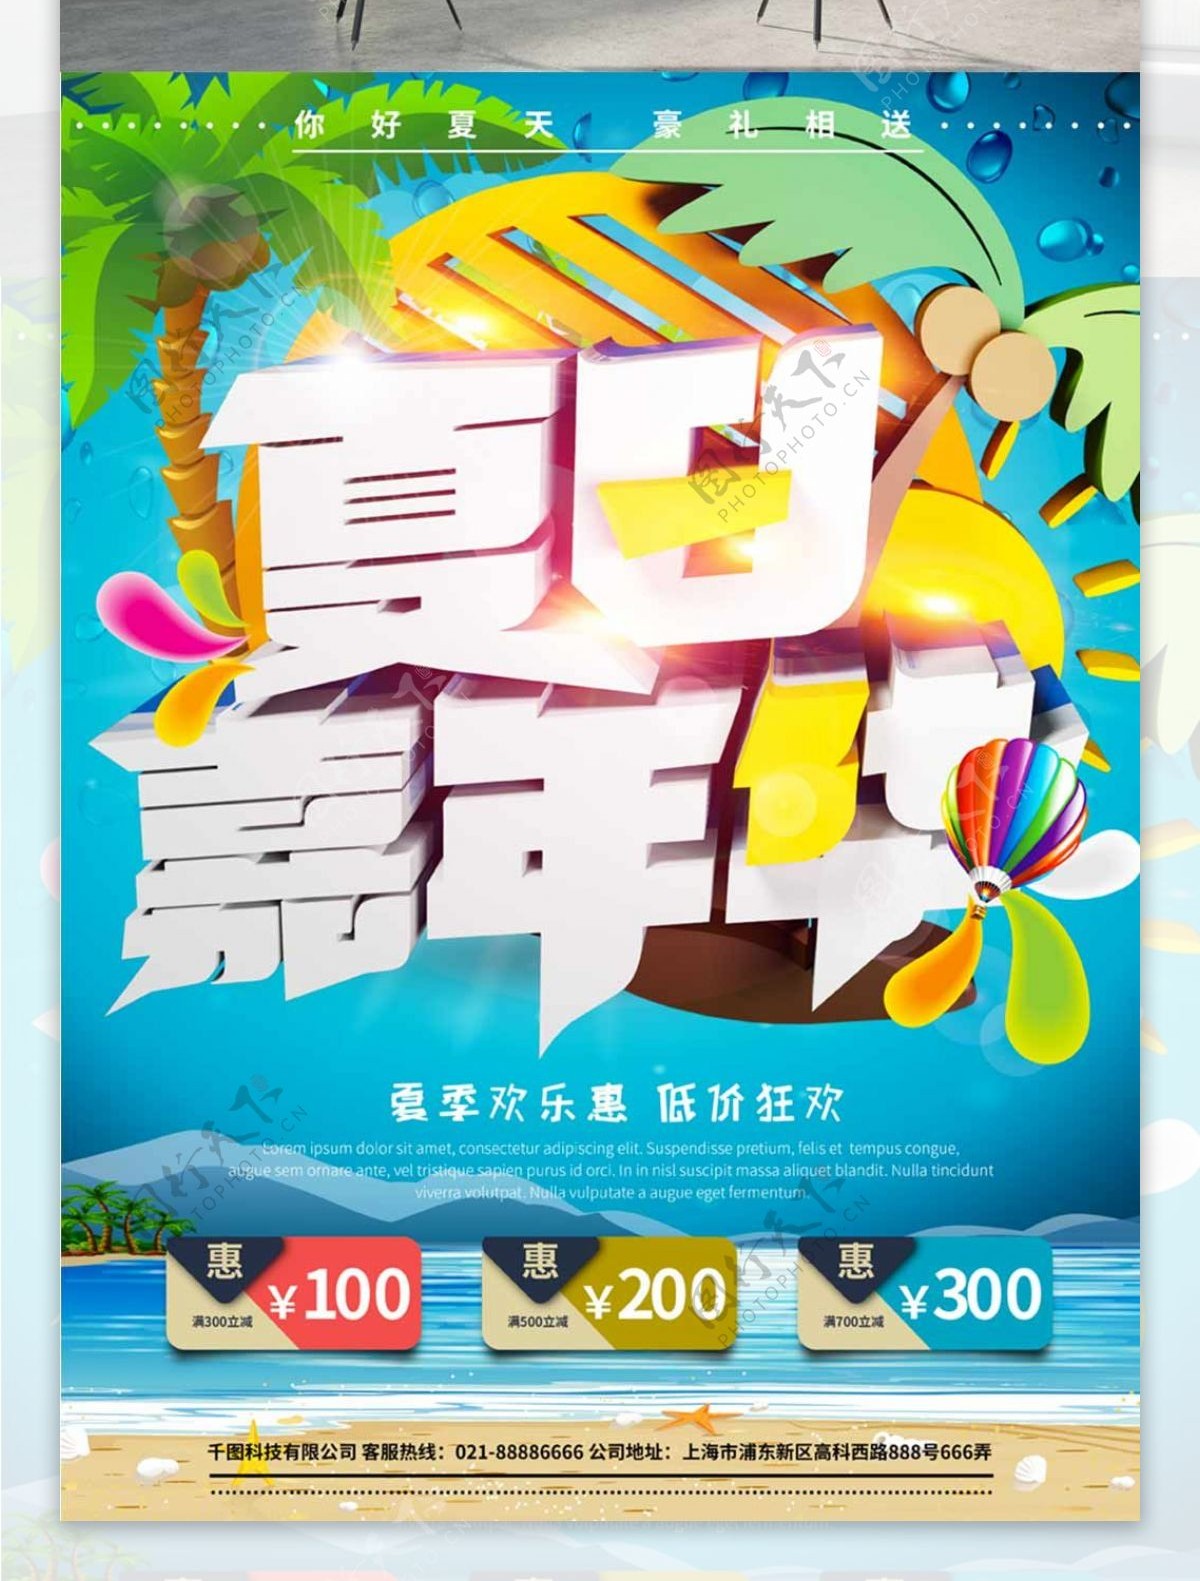 大气时尚夏日嘉年华促销海报模板